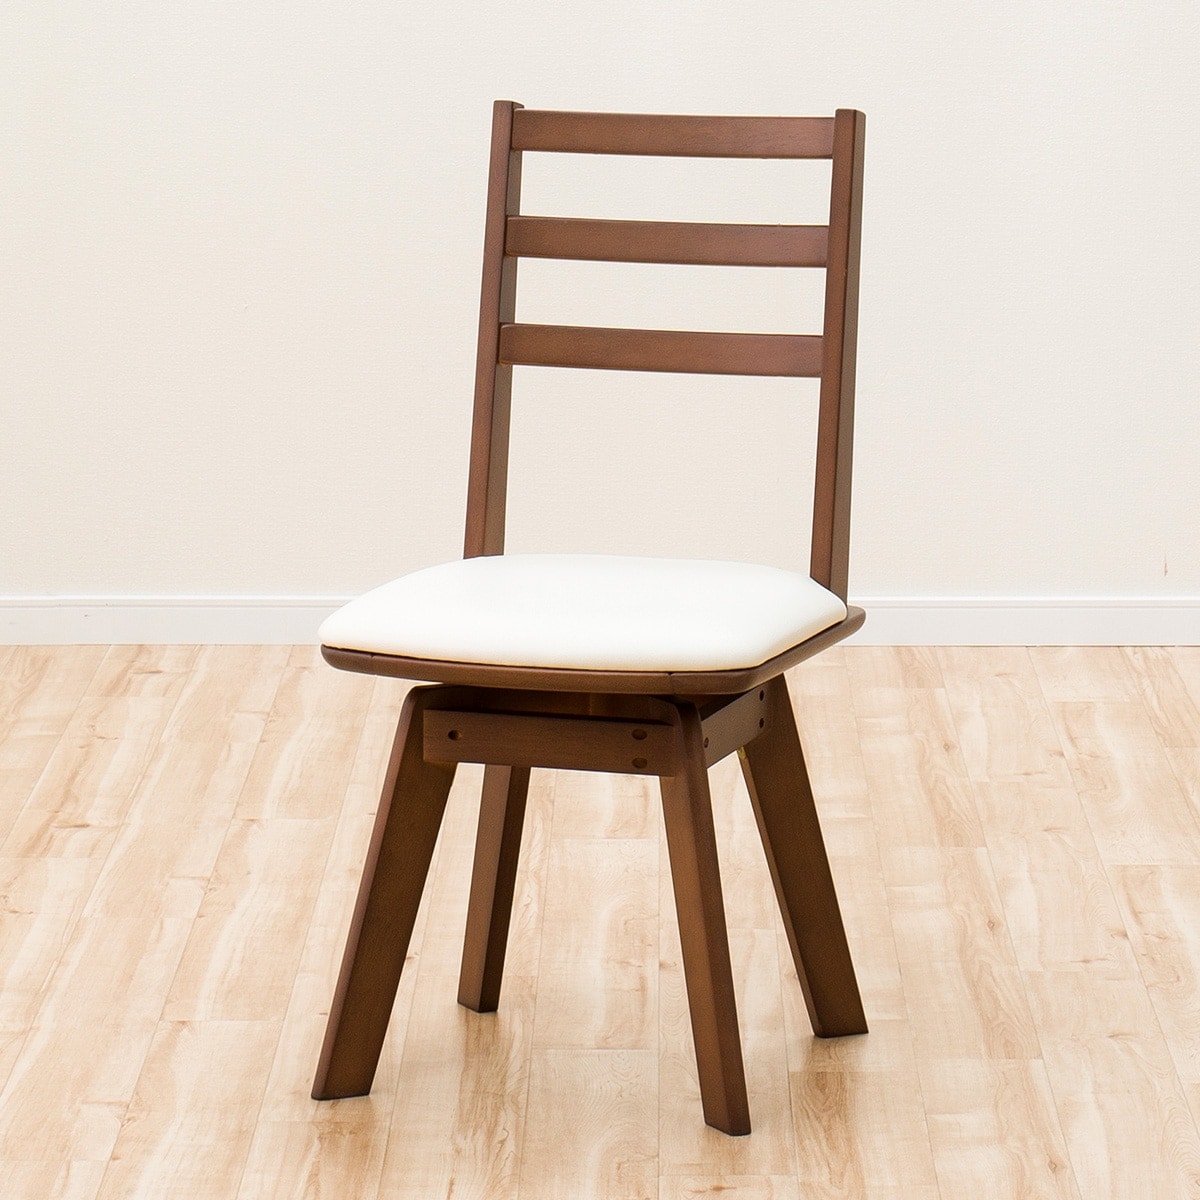 ニトリ ダイニングテーブル・回転椅子2脚 セット品 - ダイニングテーブル